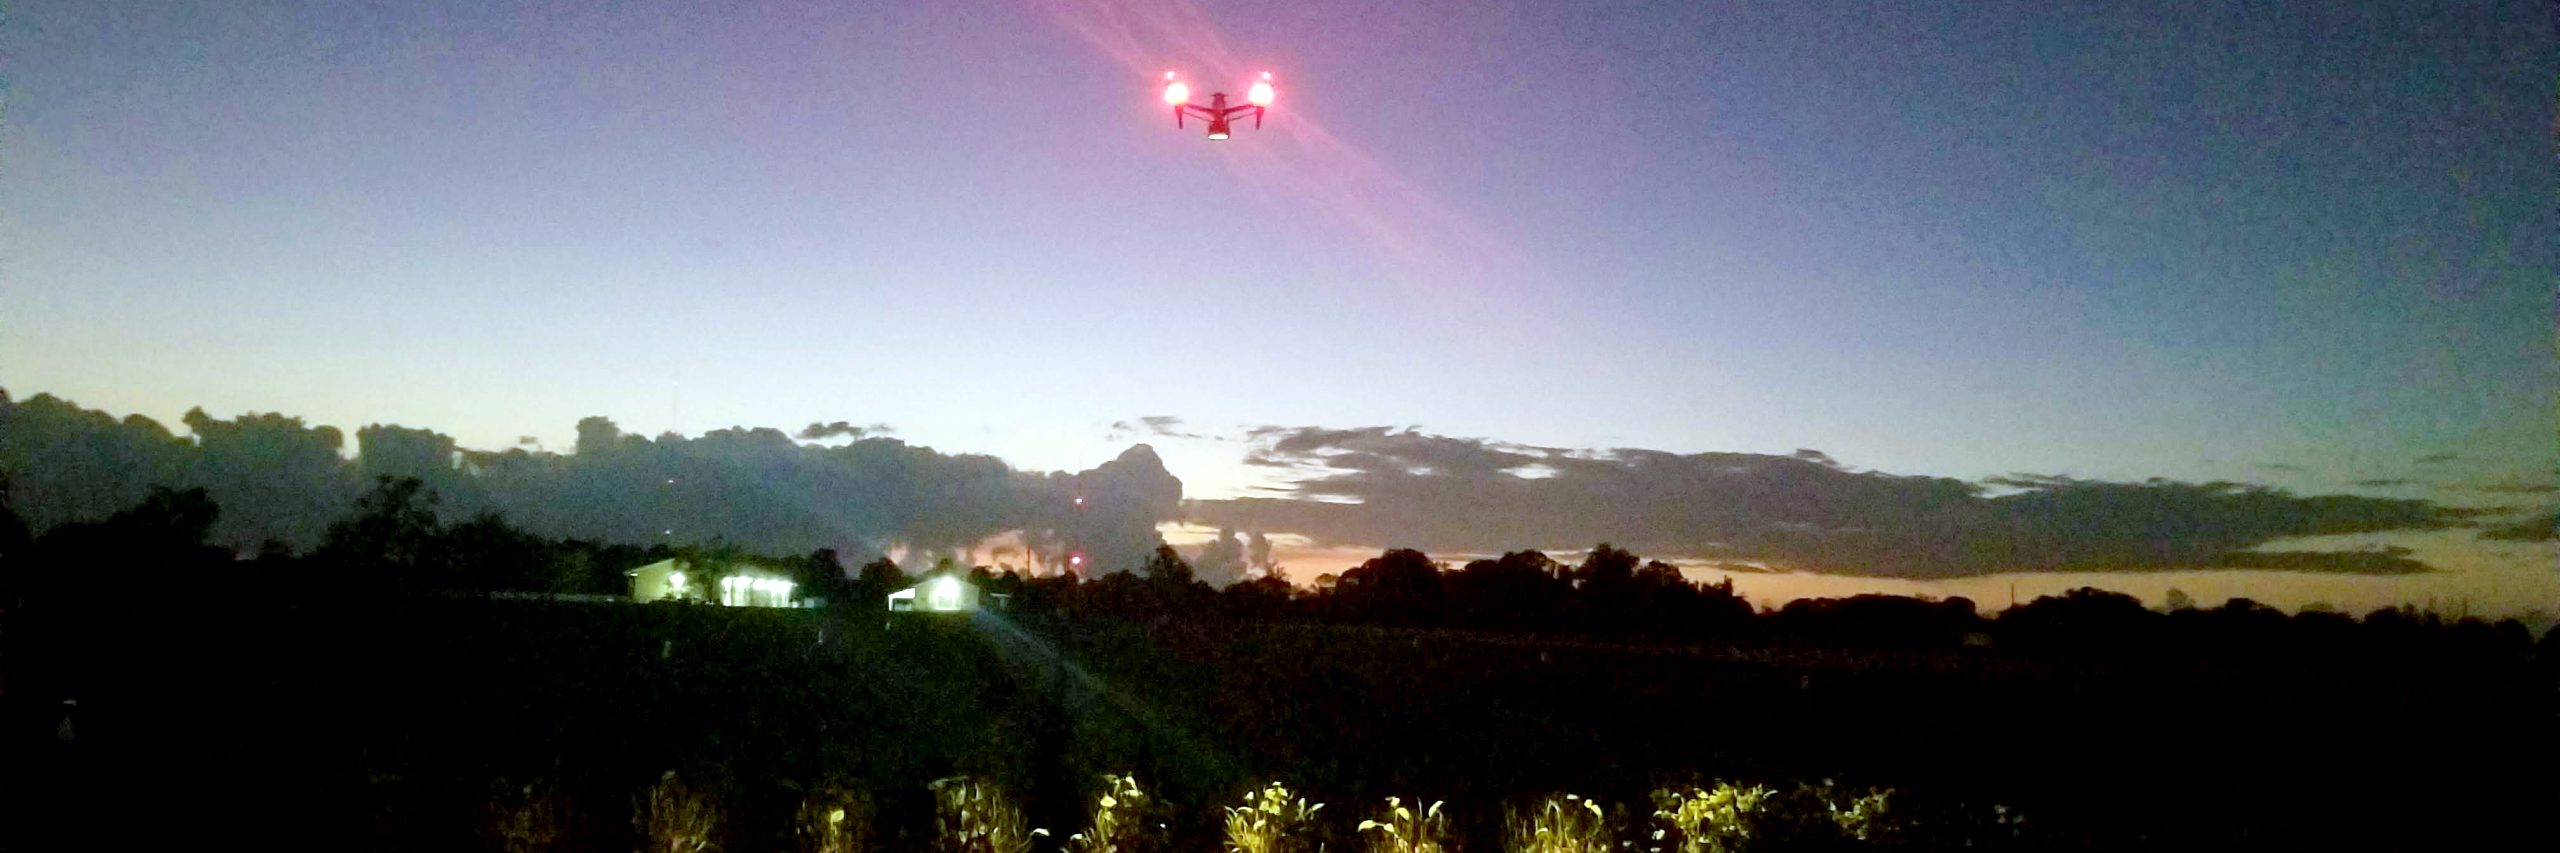 UAS-AI-drone-night-flying-over-farm-crop-field-Auburn-Alabama-USA-sm